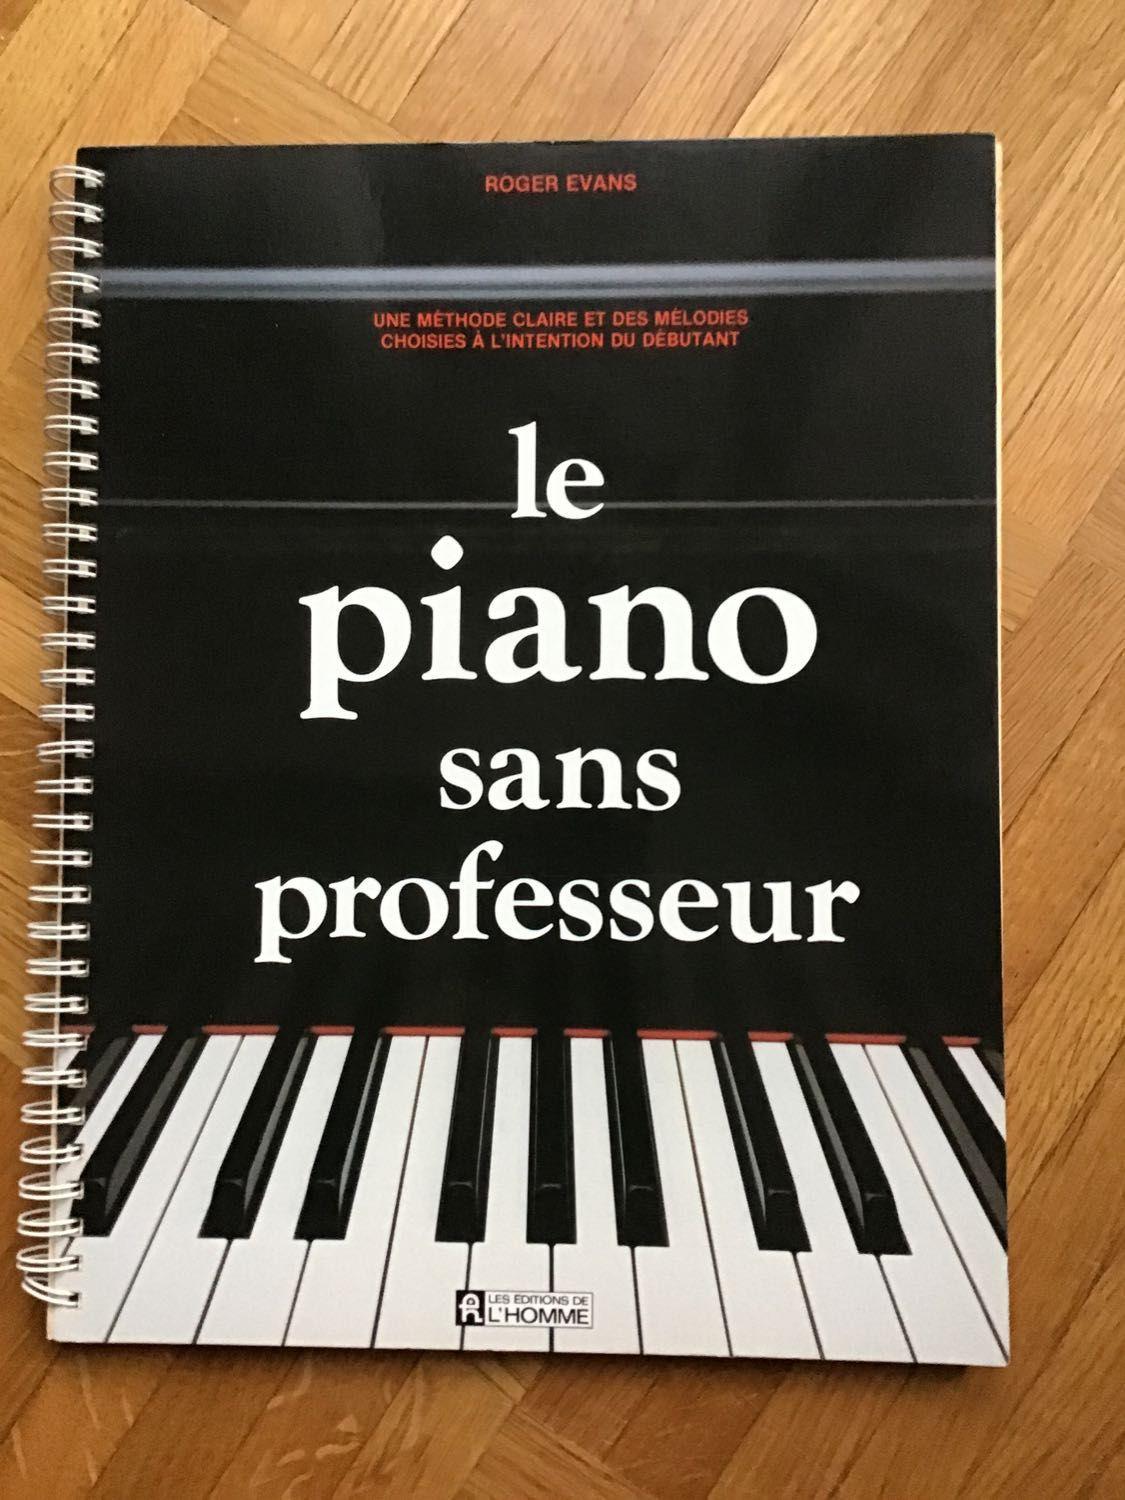 Le piano sans professeur. Roger Evans - Art et culture